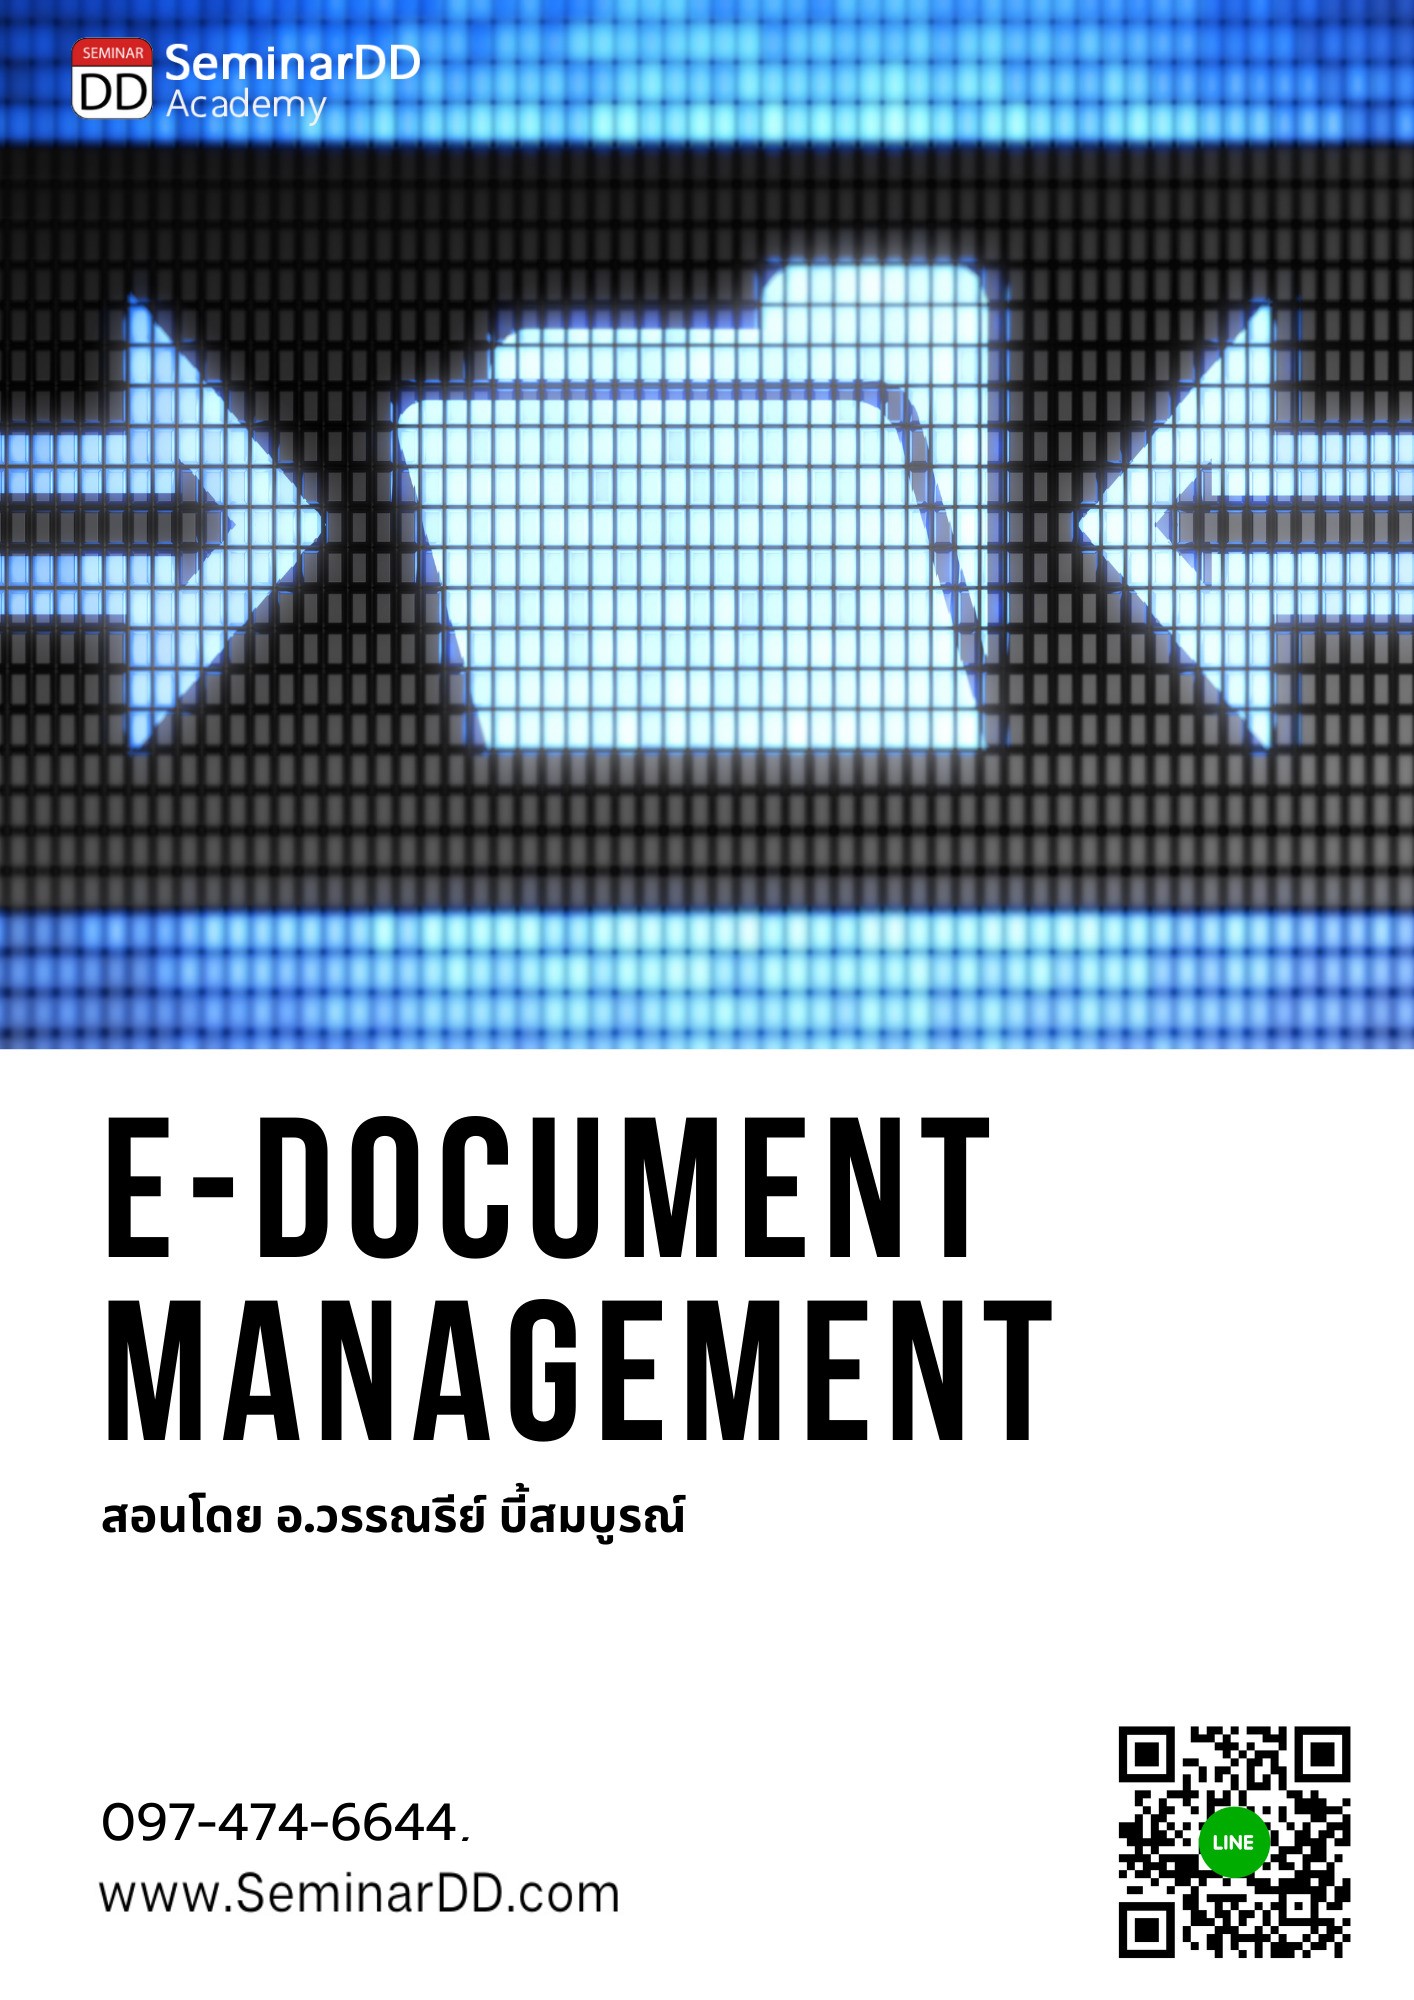 หลักสูตร การบริหารและจัดเก็บเอกสาร ในรูปแบบดิจิทัล ตามมาตรฐานสากล (E-Document Management) ** หลักสูตร เต็มวัน ** อบรมในรูปแบบ Online ผ่าน Zoom